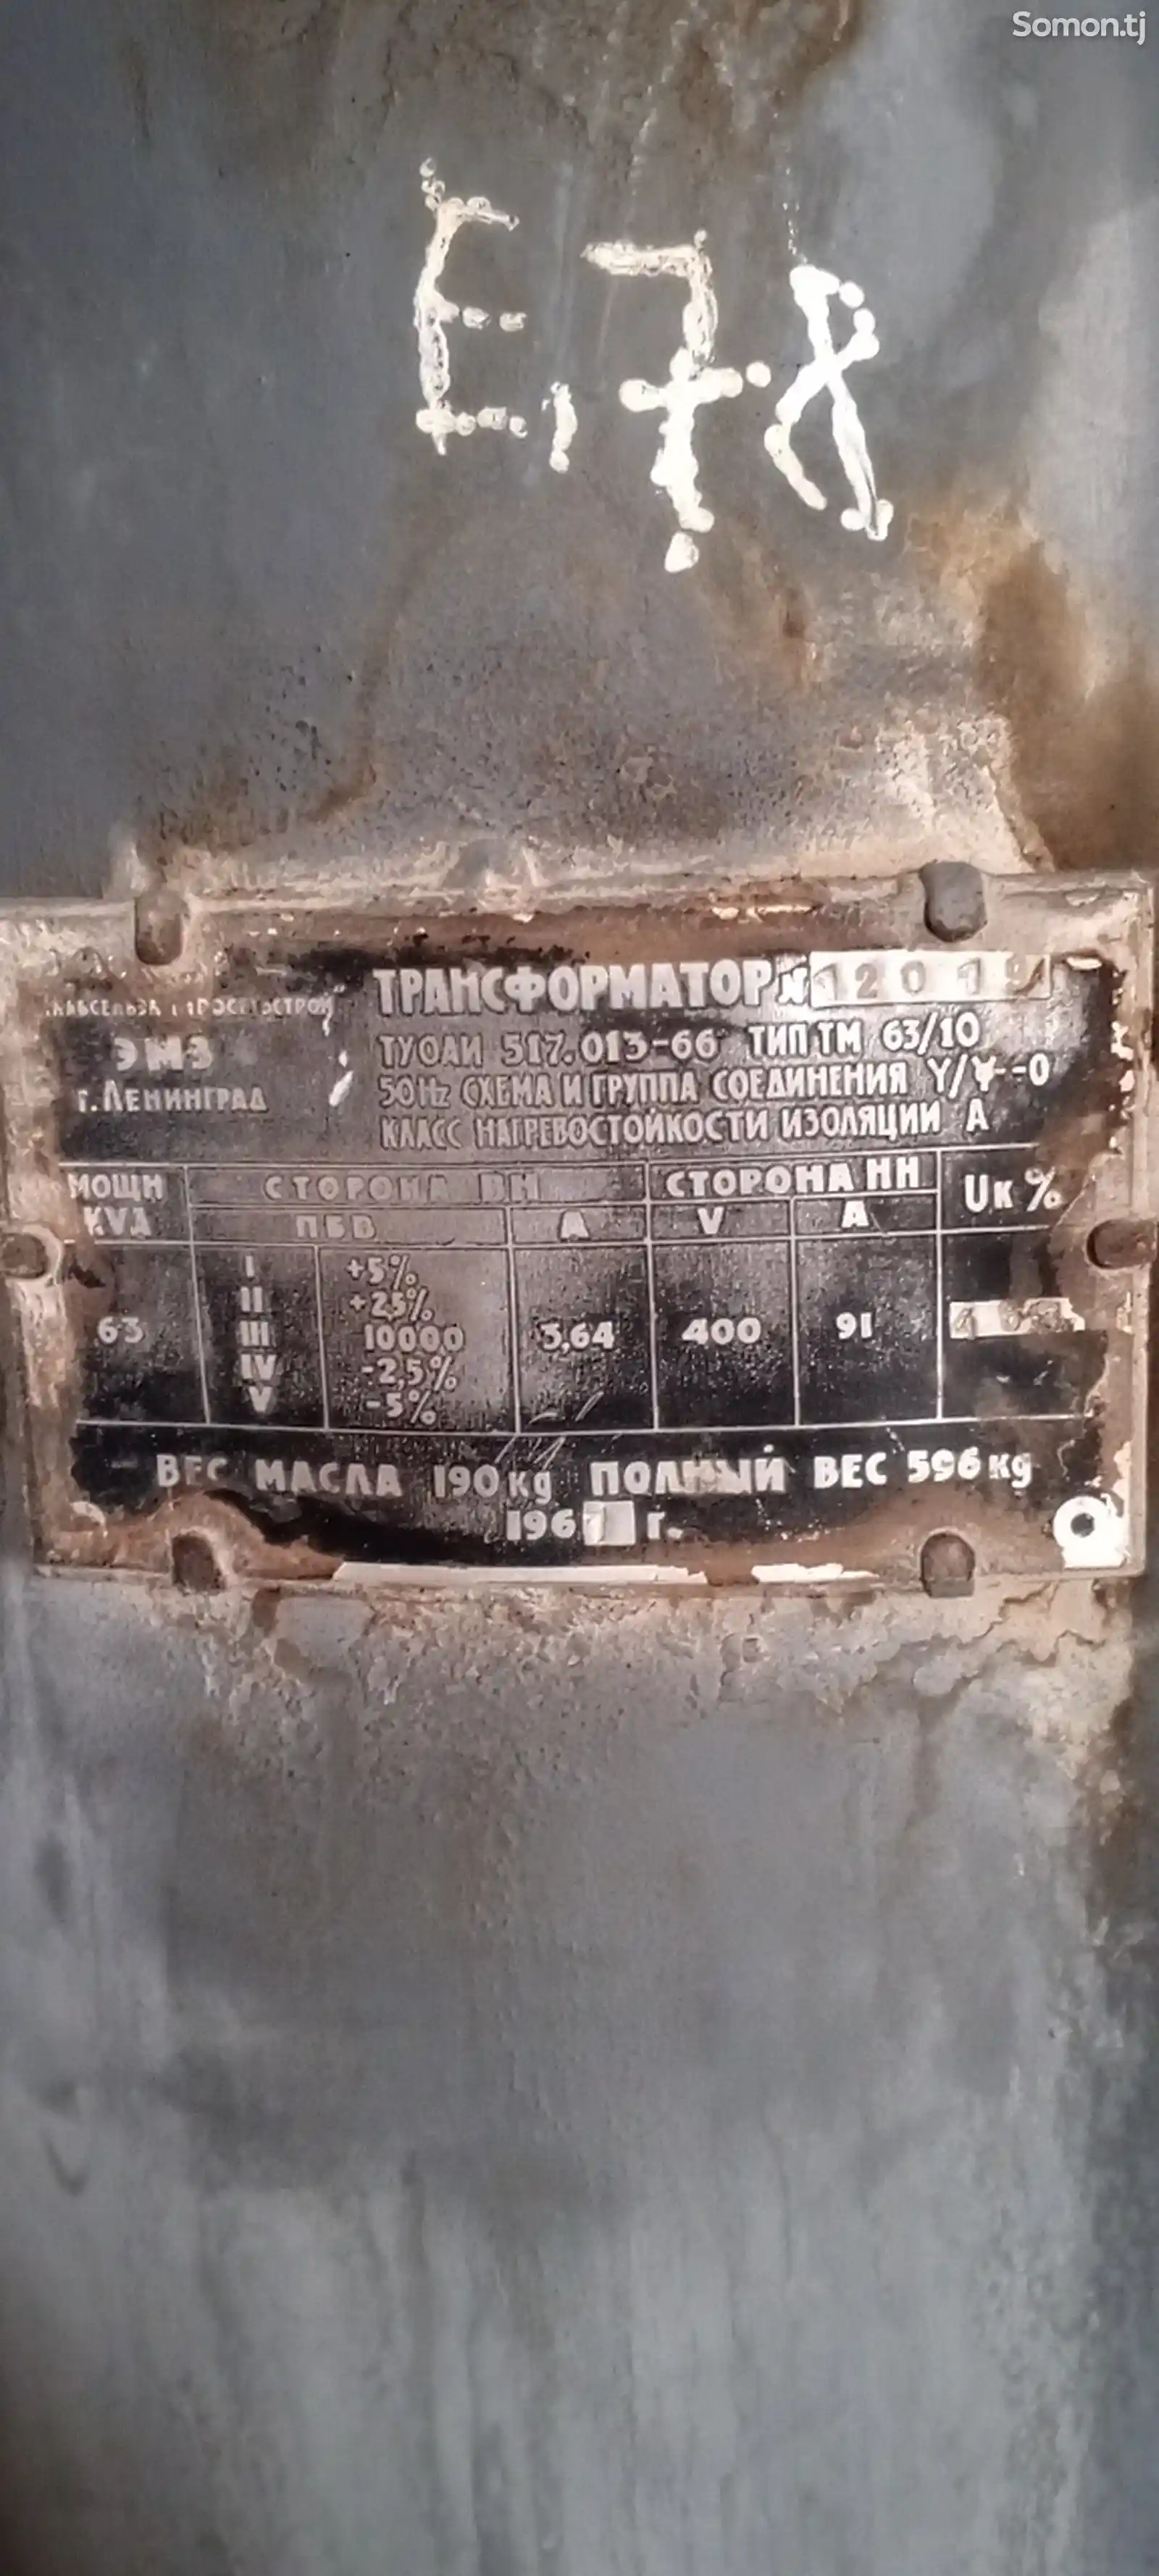 Трансформатор и КТП-2